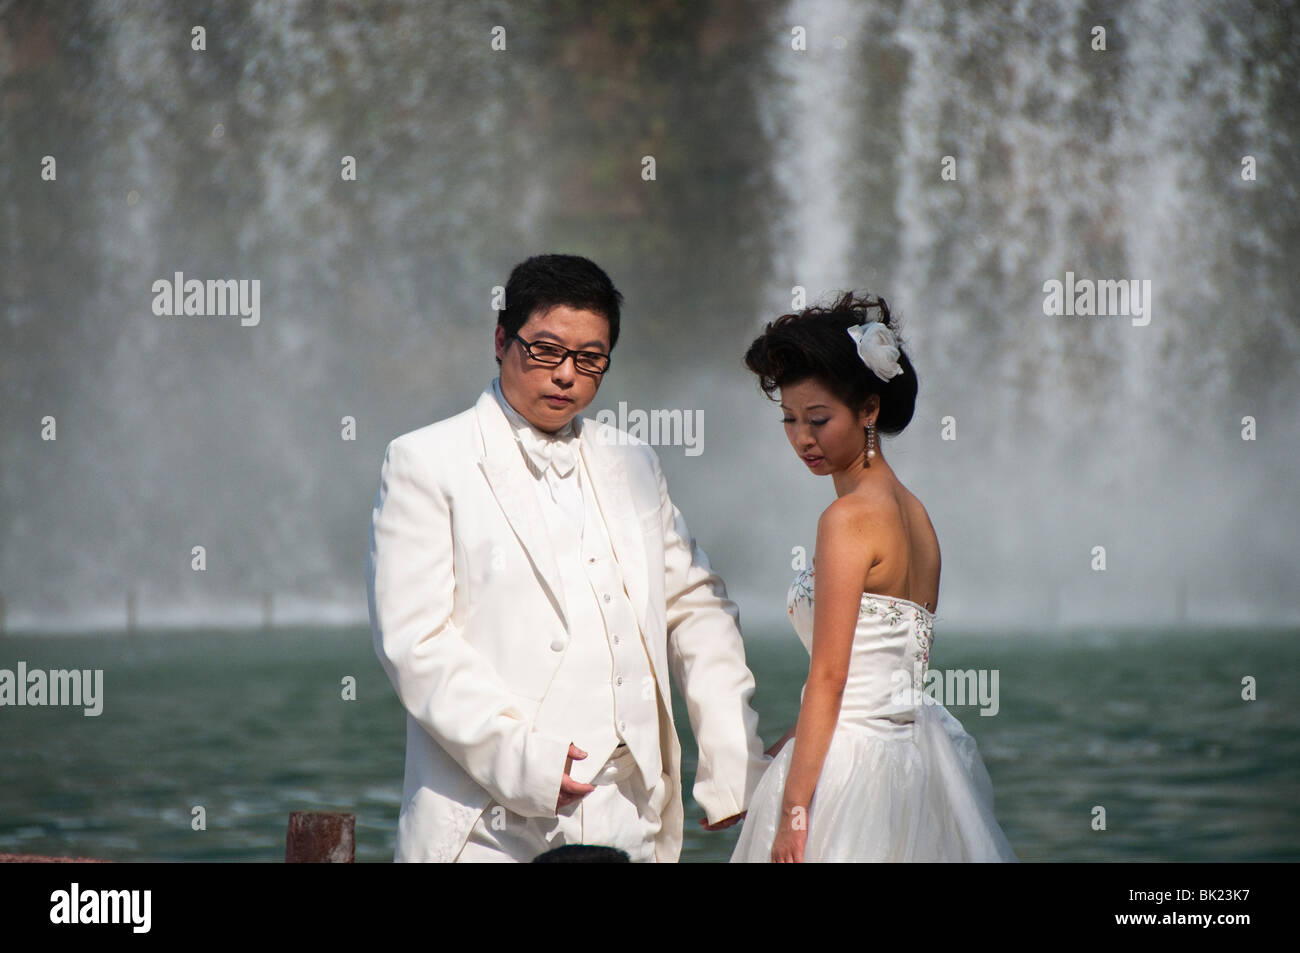 Chinesisches Ehepaar dabei ihre Pre-Wedding-Bilder an den Fenstern der Welt, Shenzhen, China. Stockfoto